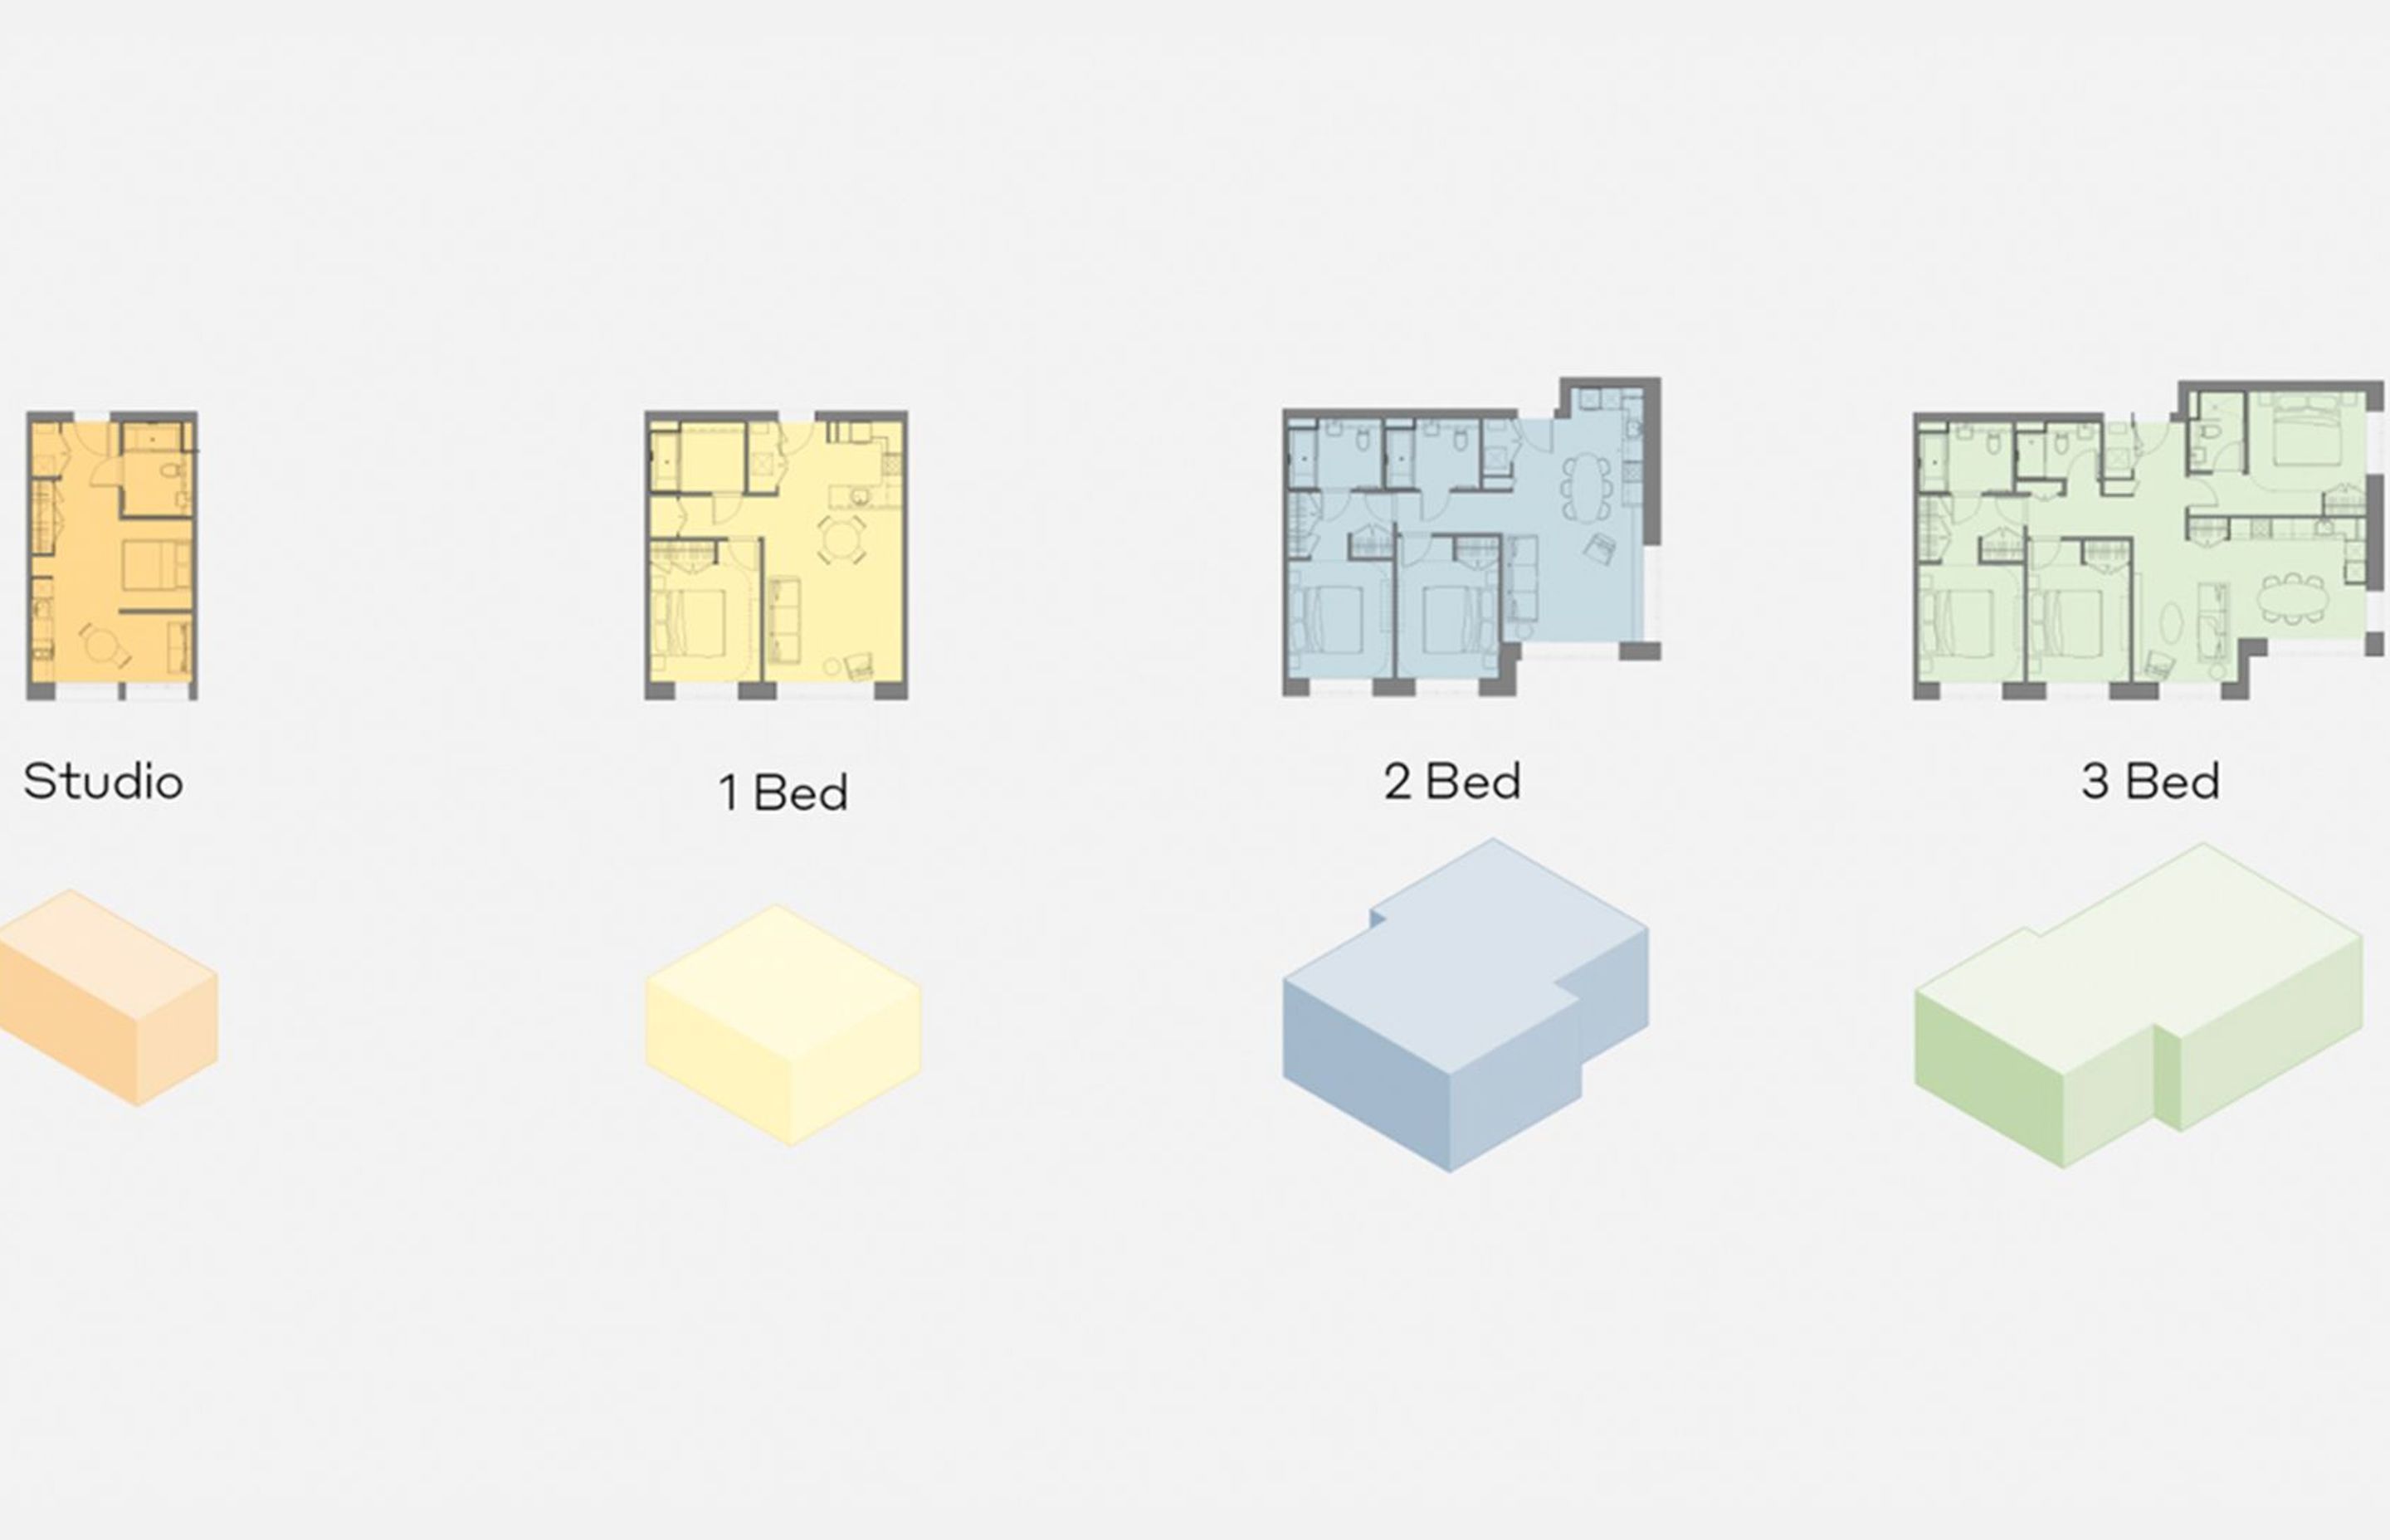 Residential Models / Typologies